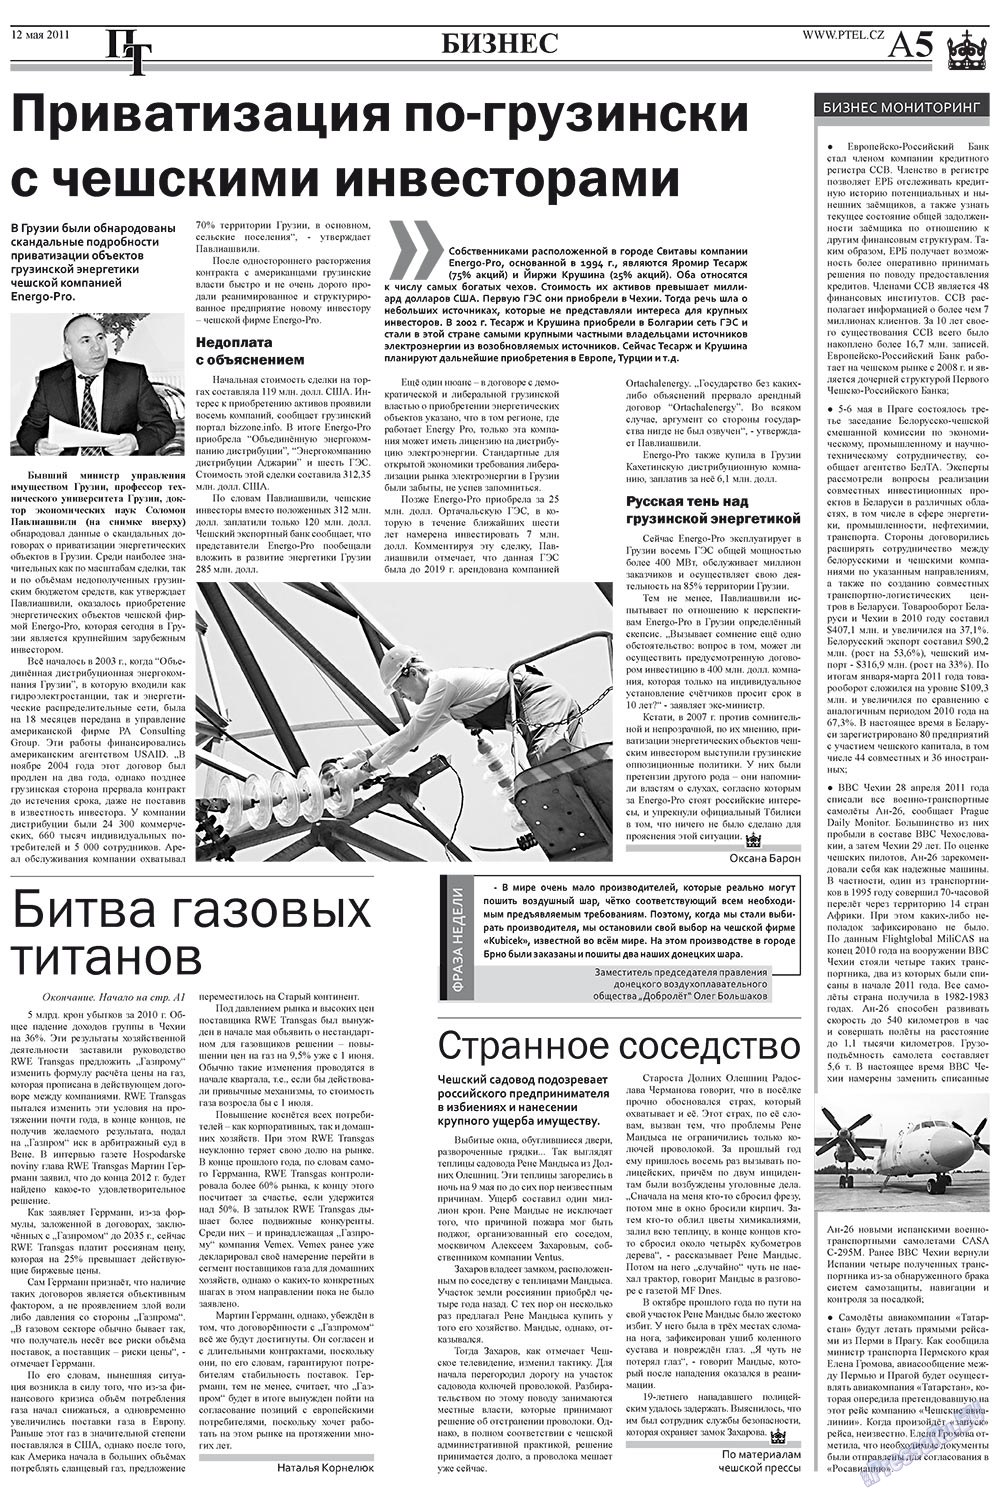 Пражский телеграф (газета). 2011 год, номер 19, стр. 5